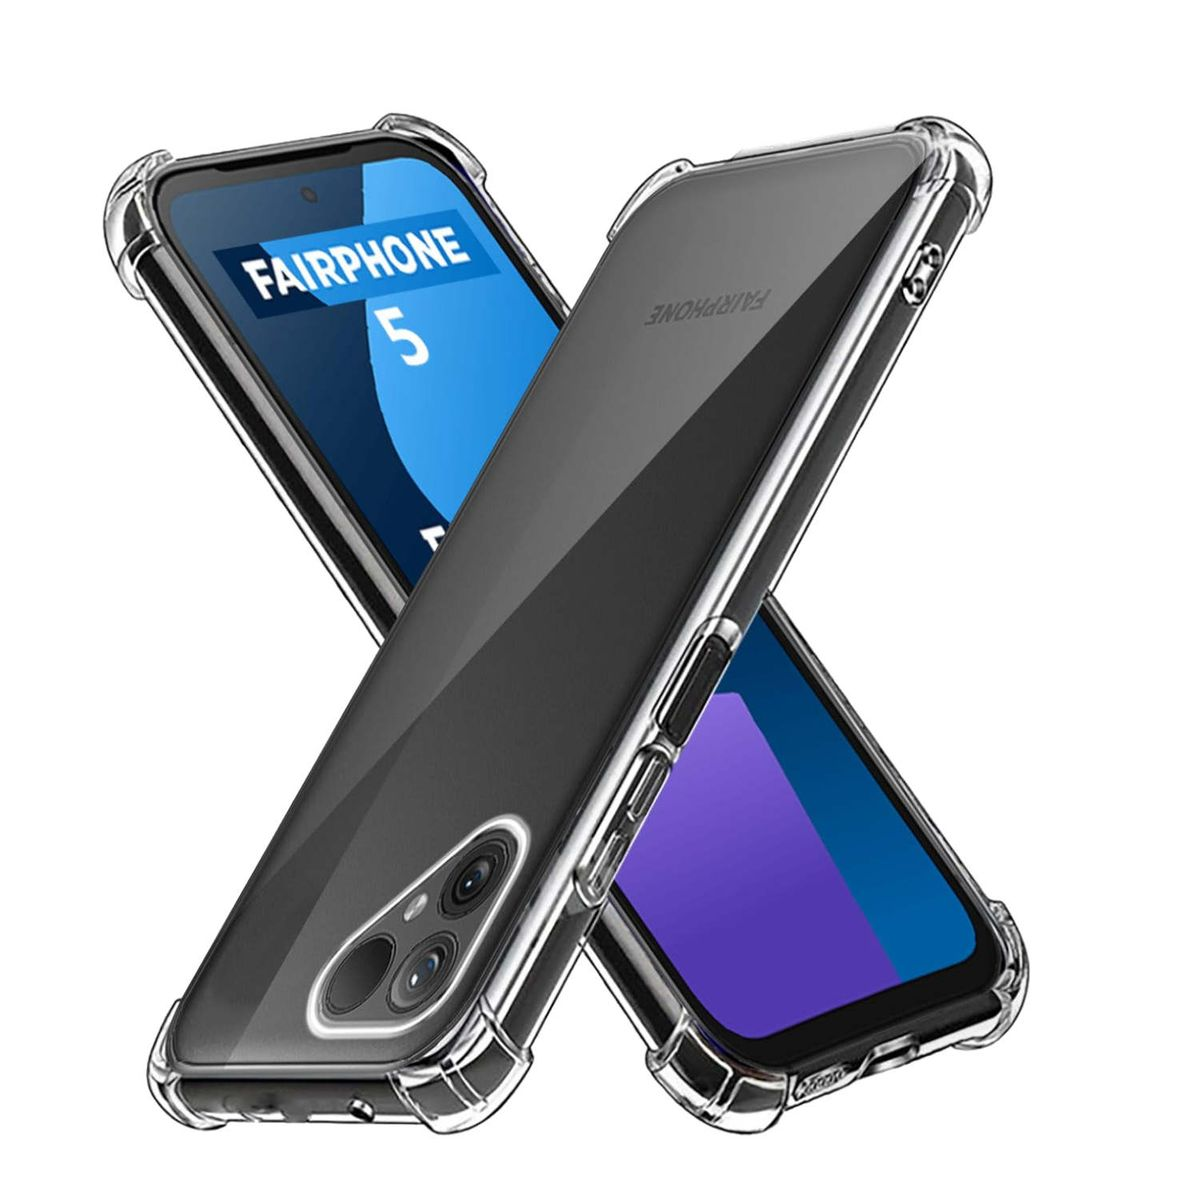 Backcover, Fairphone robust, verstärkte 5, TPU Hülle Silikon dünn Transparent Fairphone, WIGENTO Schock Ecken